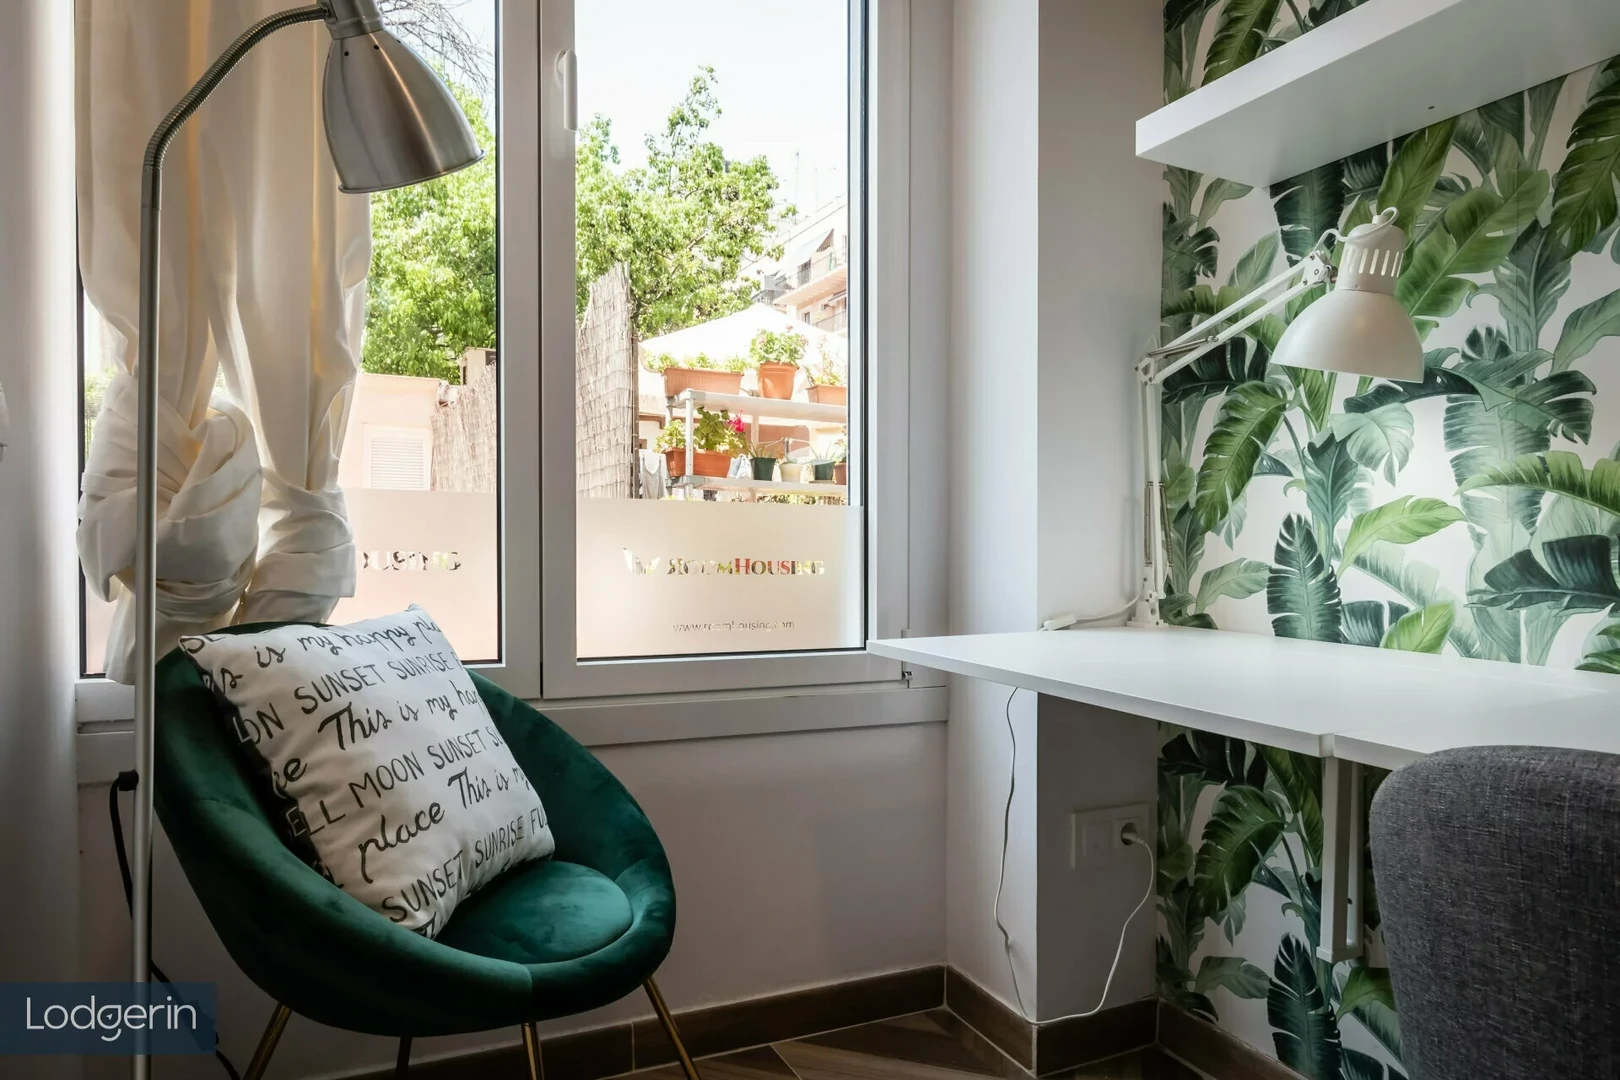 Barcelona de kiralık ucuz paylaşımlı oda